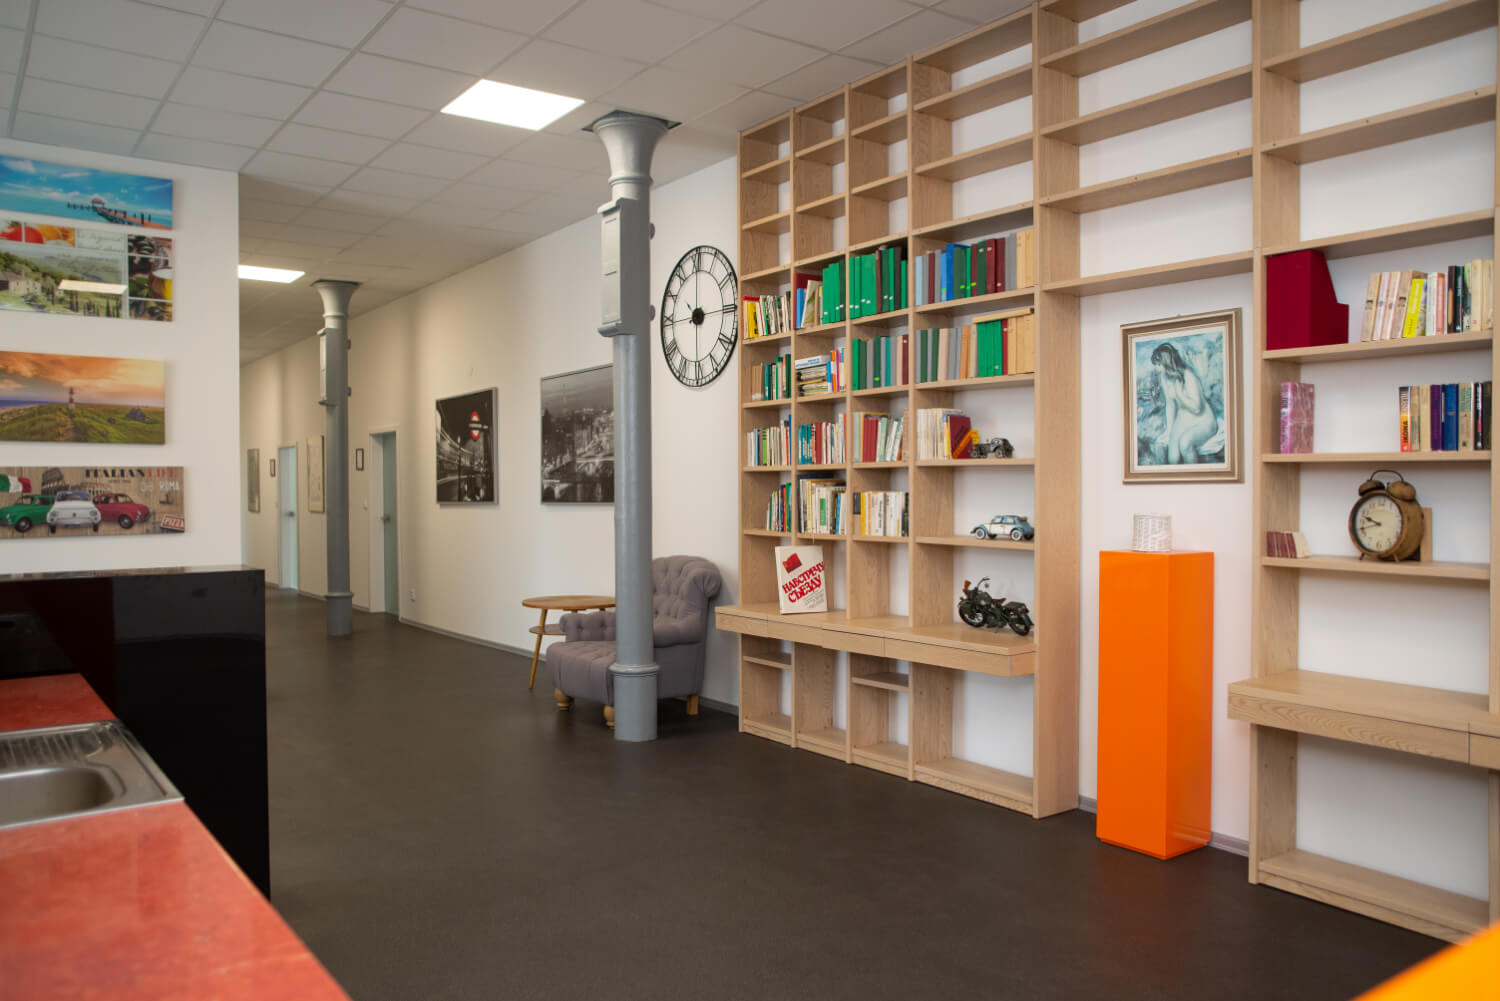 Nově zrekonstruovaná budova Moravolen vlastněná společností OSAPO reality nabízí velkorysé společné prostory pro odpočinek i kreativní práci